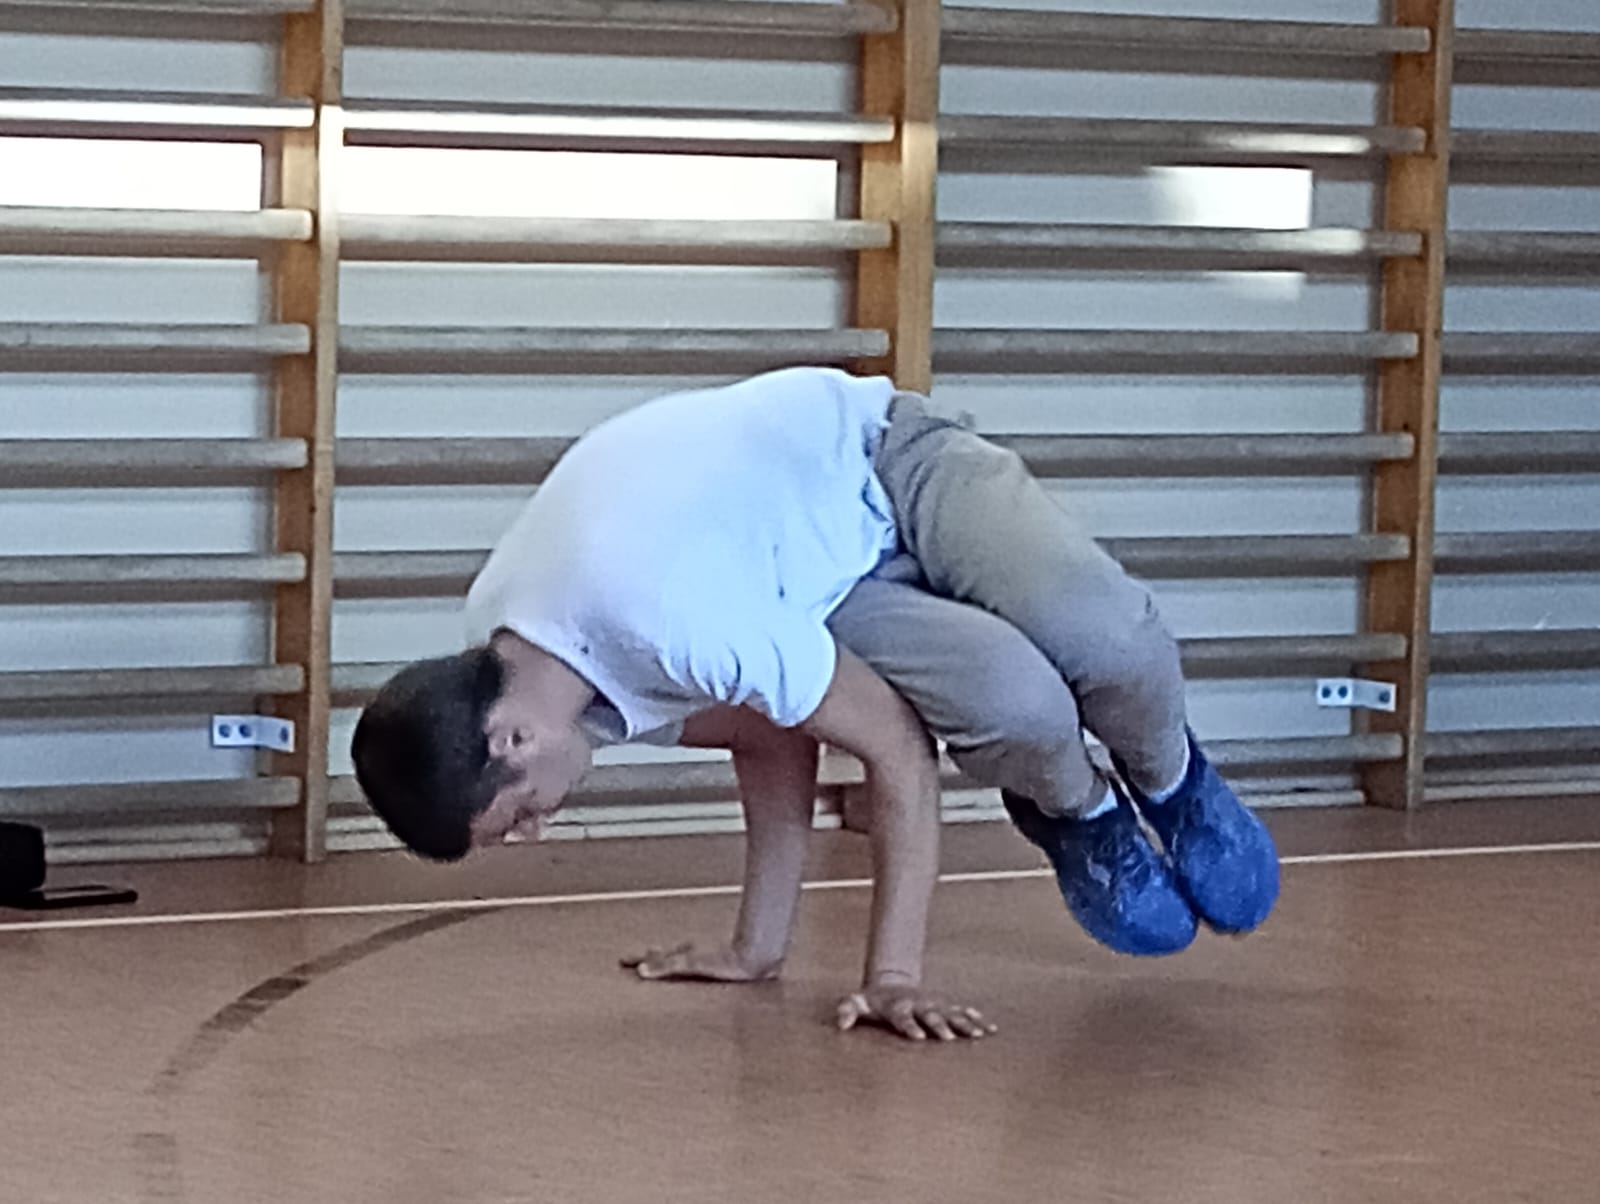 Zajęcia z programu "Fajna ferajna" | Trener tańca pokazuje na sali ginastycznej jedną z figur, opierając się tylko na rękach, reszta ciała nie dotyka podłoża. Z tyłu drabinki..jpg